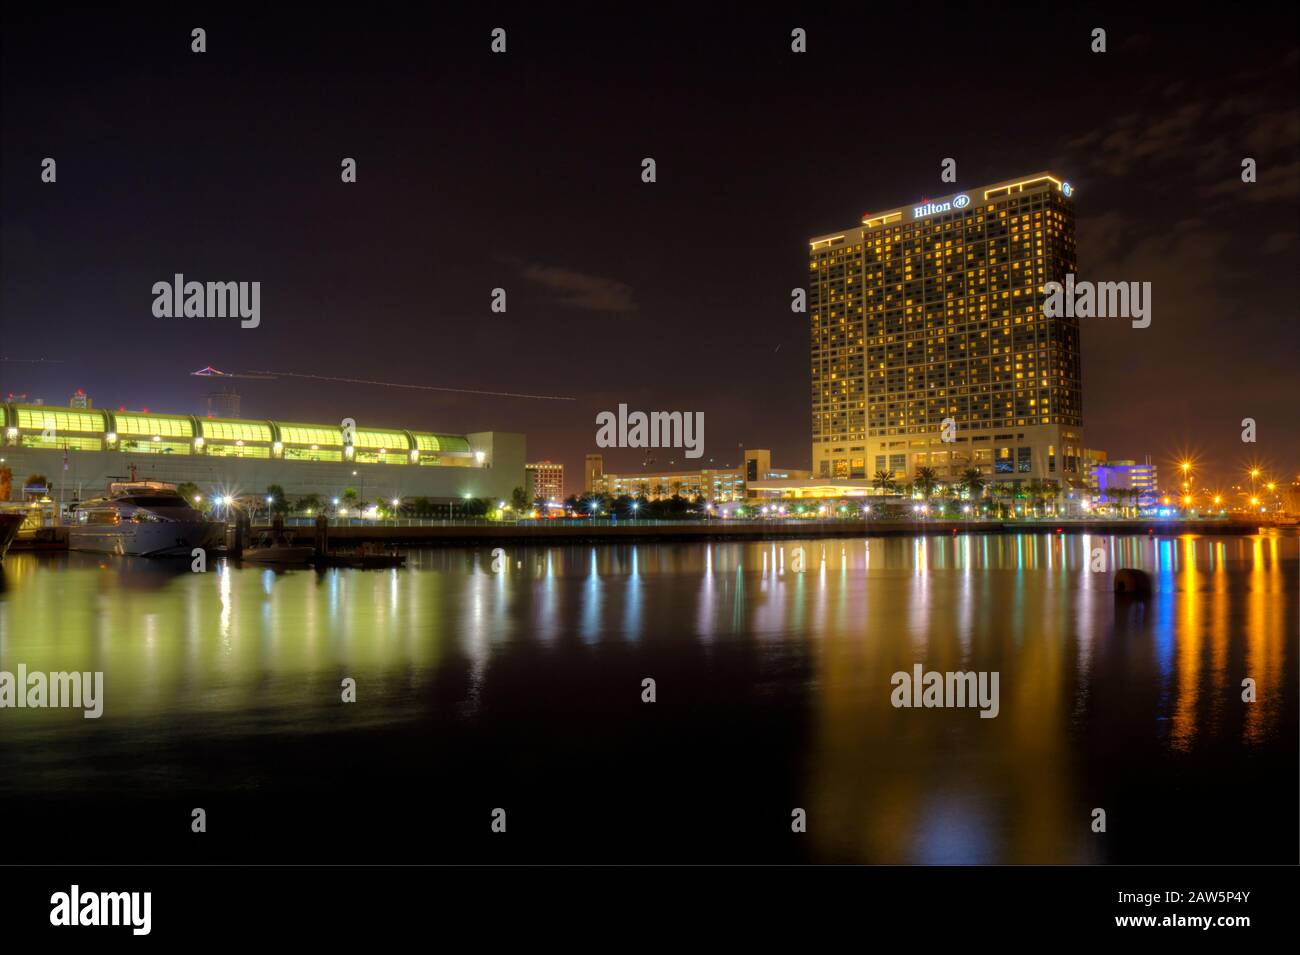 Immagine HDR di uno skyline parziale di San Diego, California visto dall'acqua con il Centro Congressi, Embarcadero Marina e l'Hilton Hotel afte Foto Stock